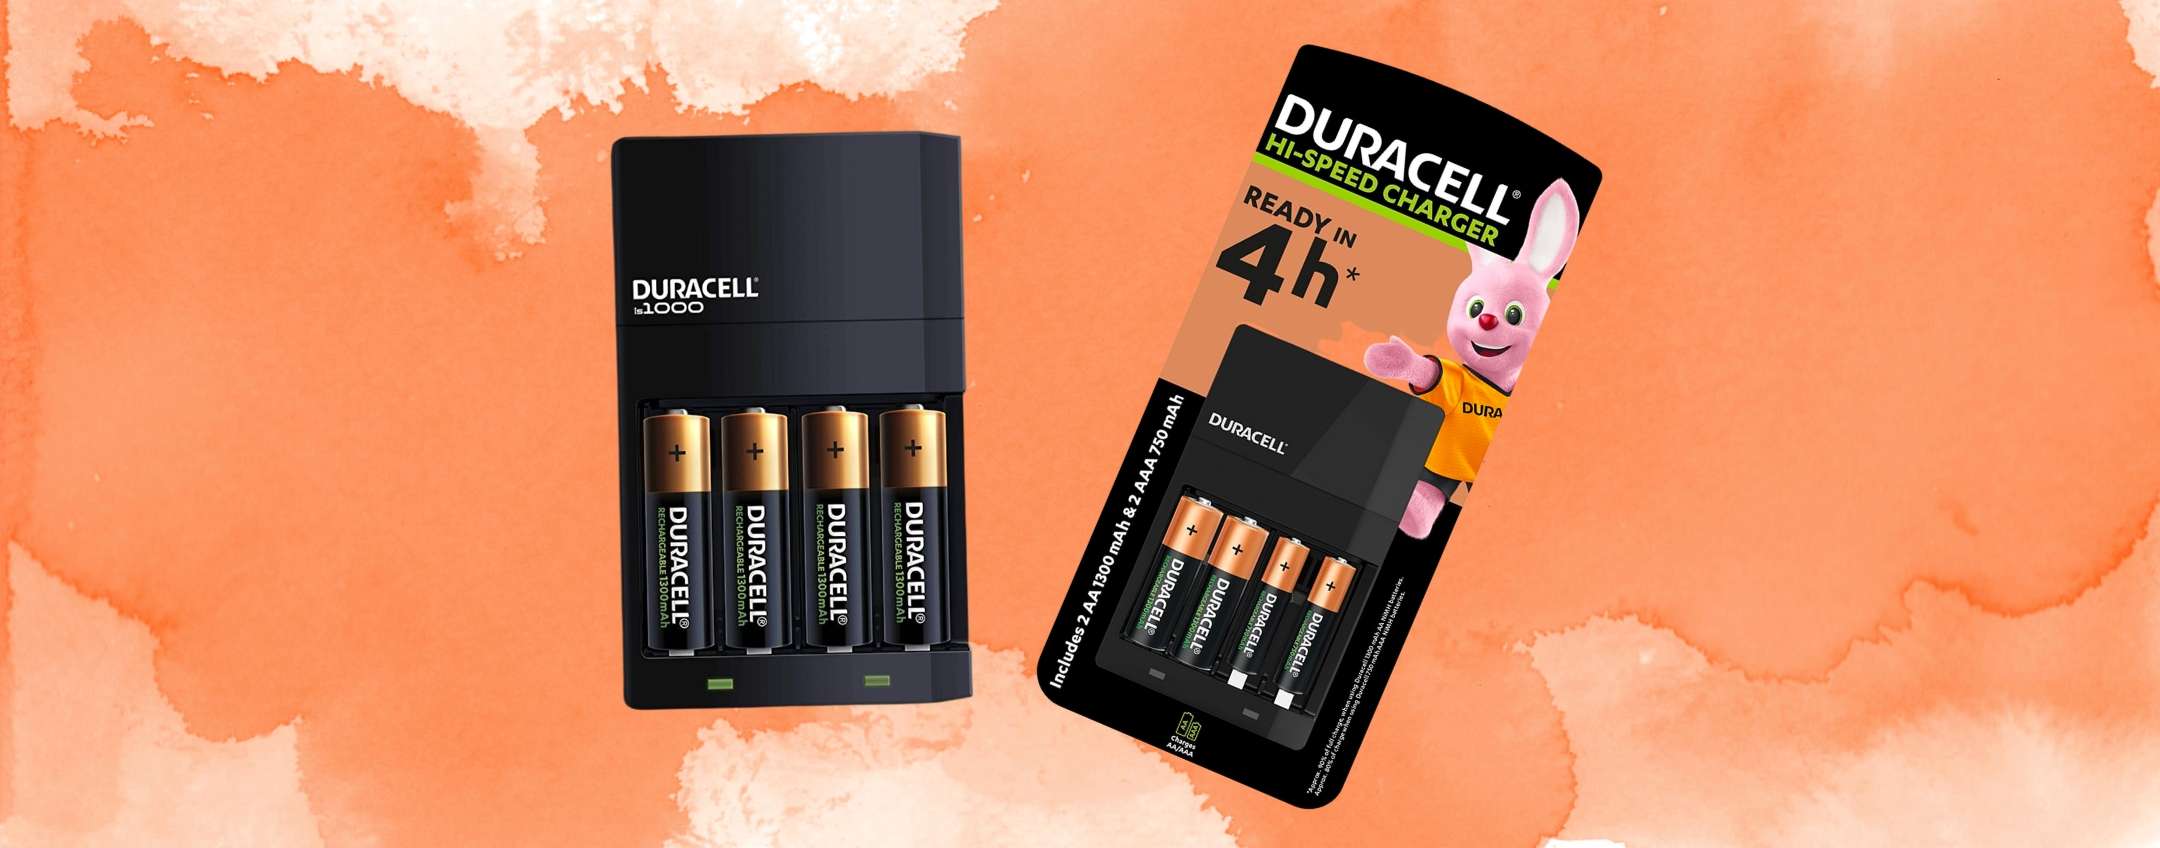 Duracell - Caricabatterie da 4 Ore, con incluse batterie